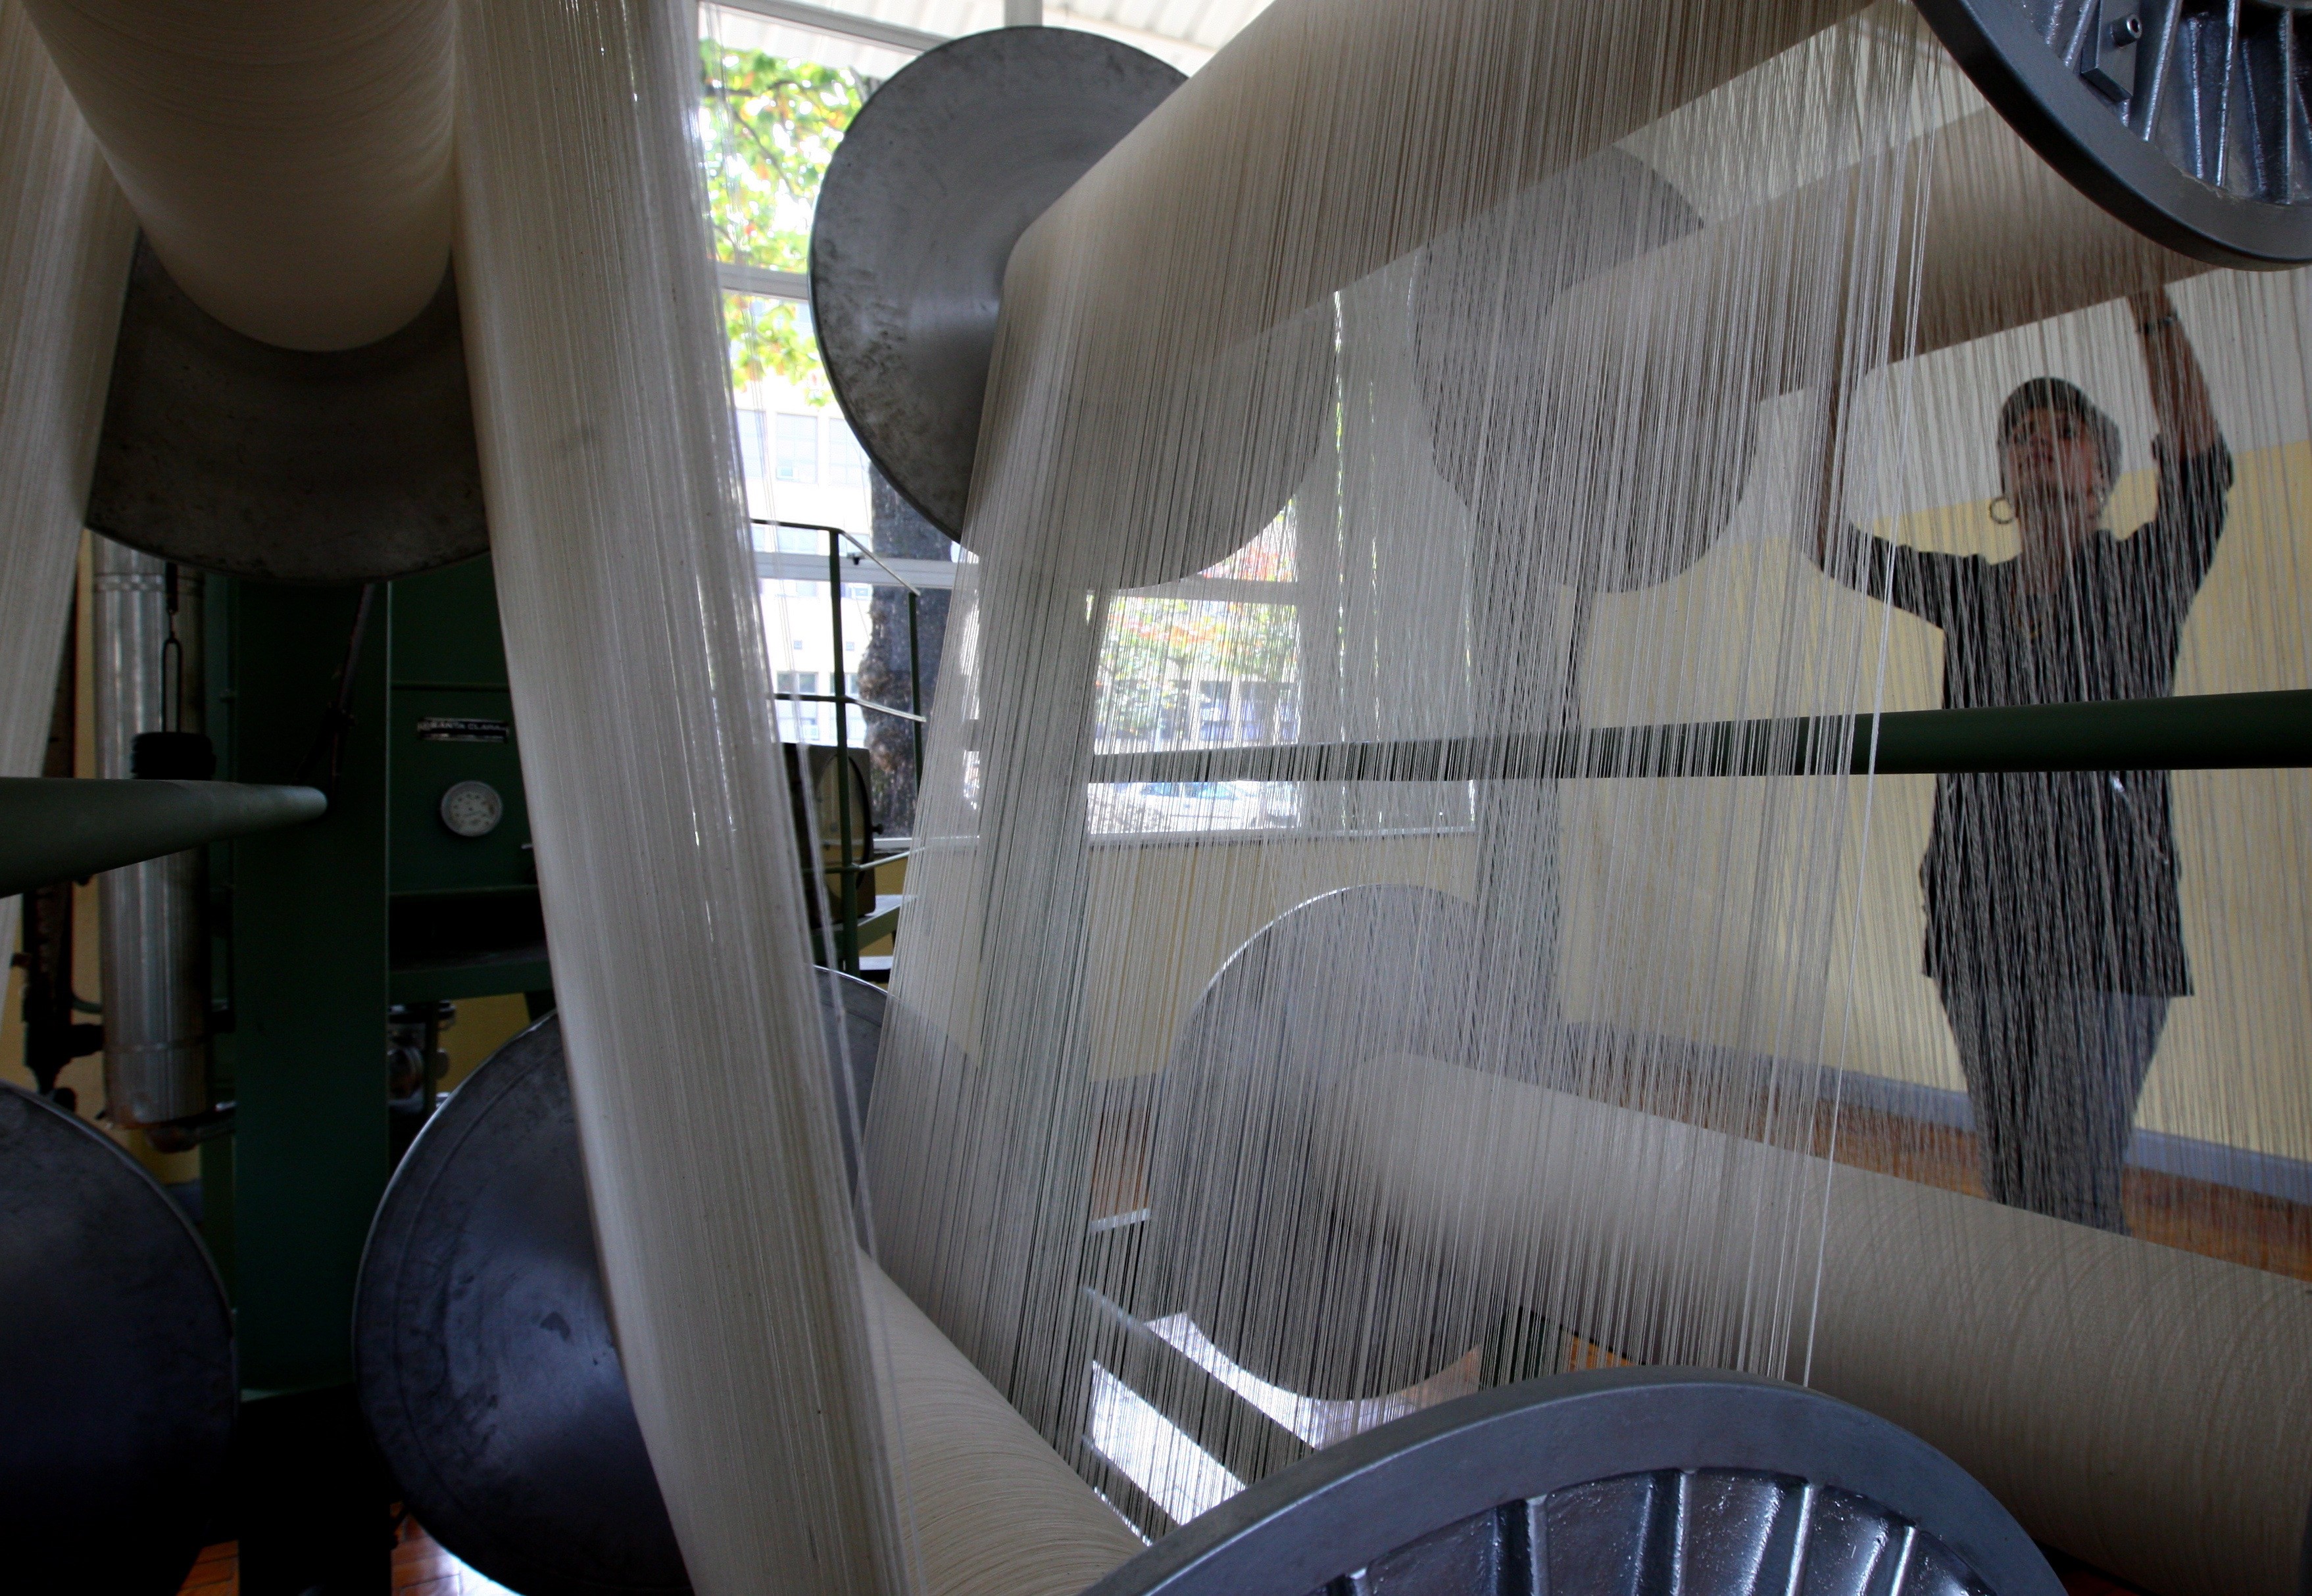 Fábricas têxtis são as que mais utilizam o gás como fonte de energia, em processos de fiação, tecelagem, malharia e acabamentos de tecidos